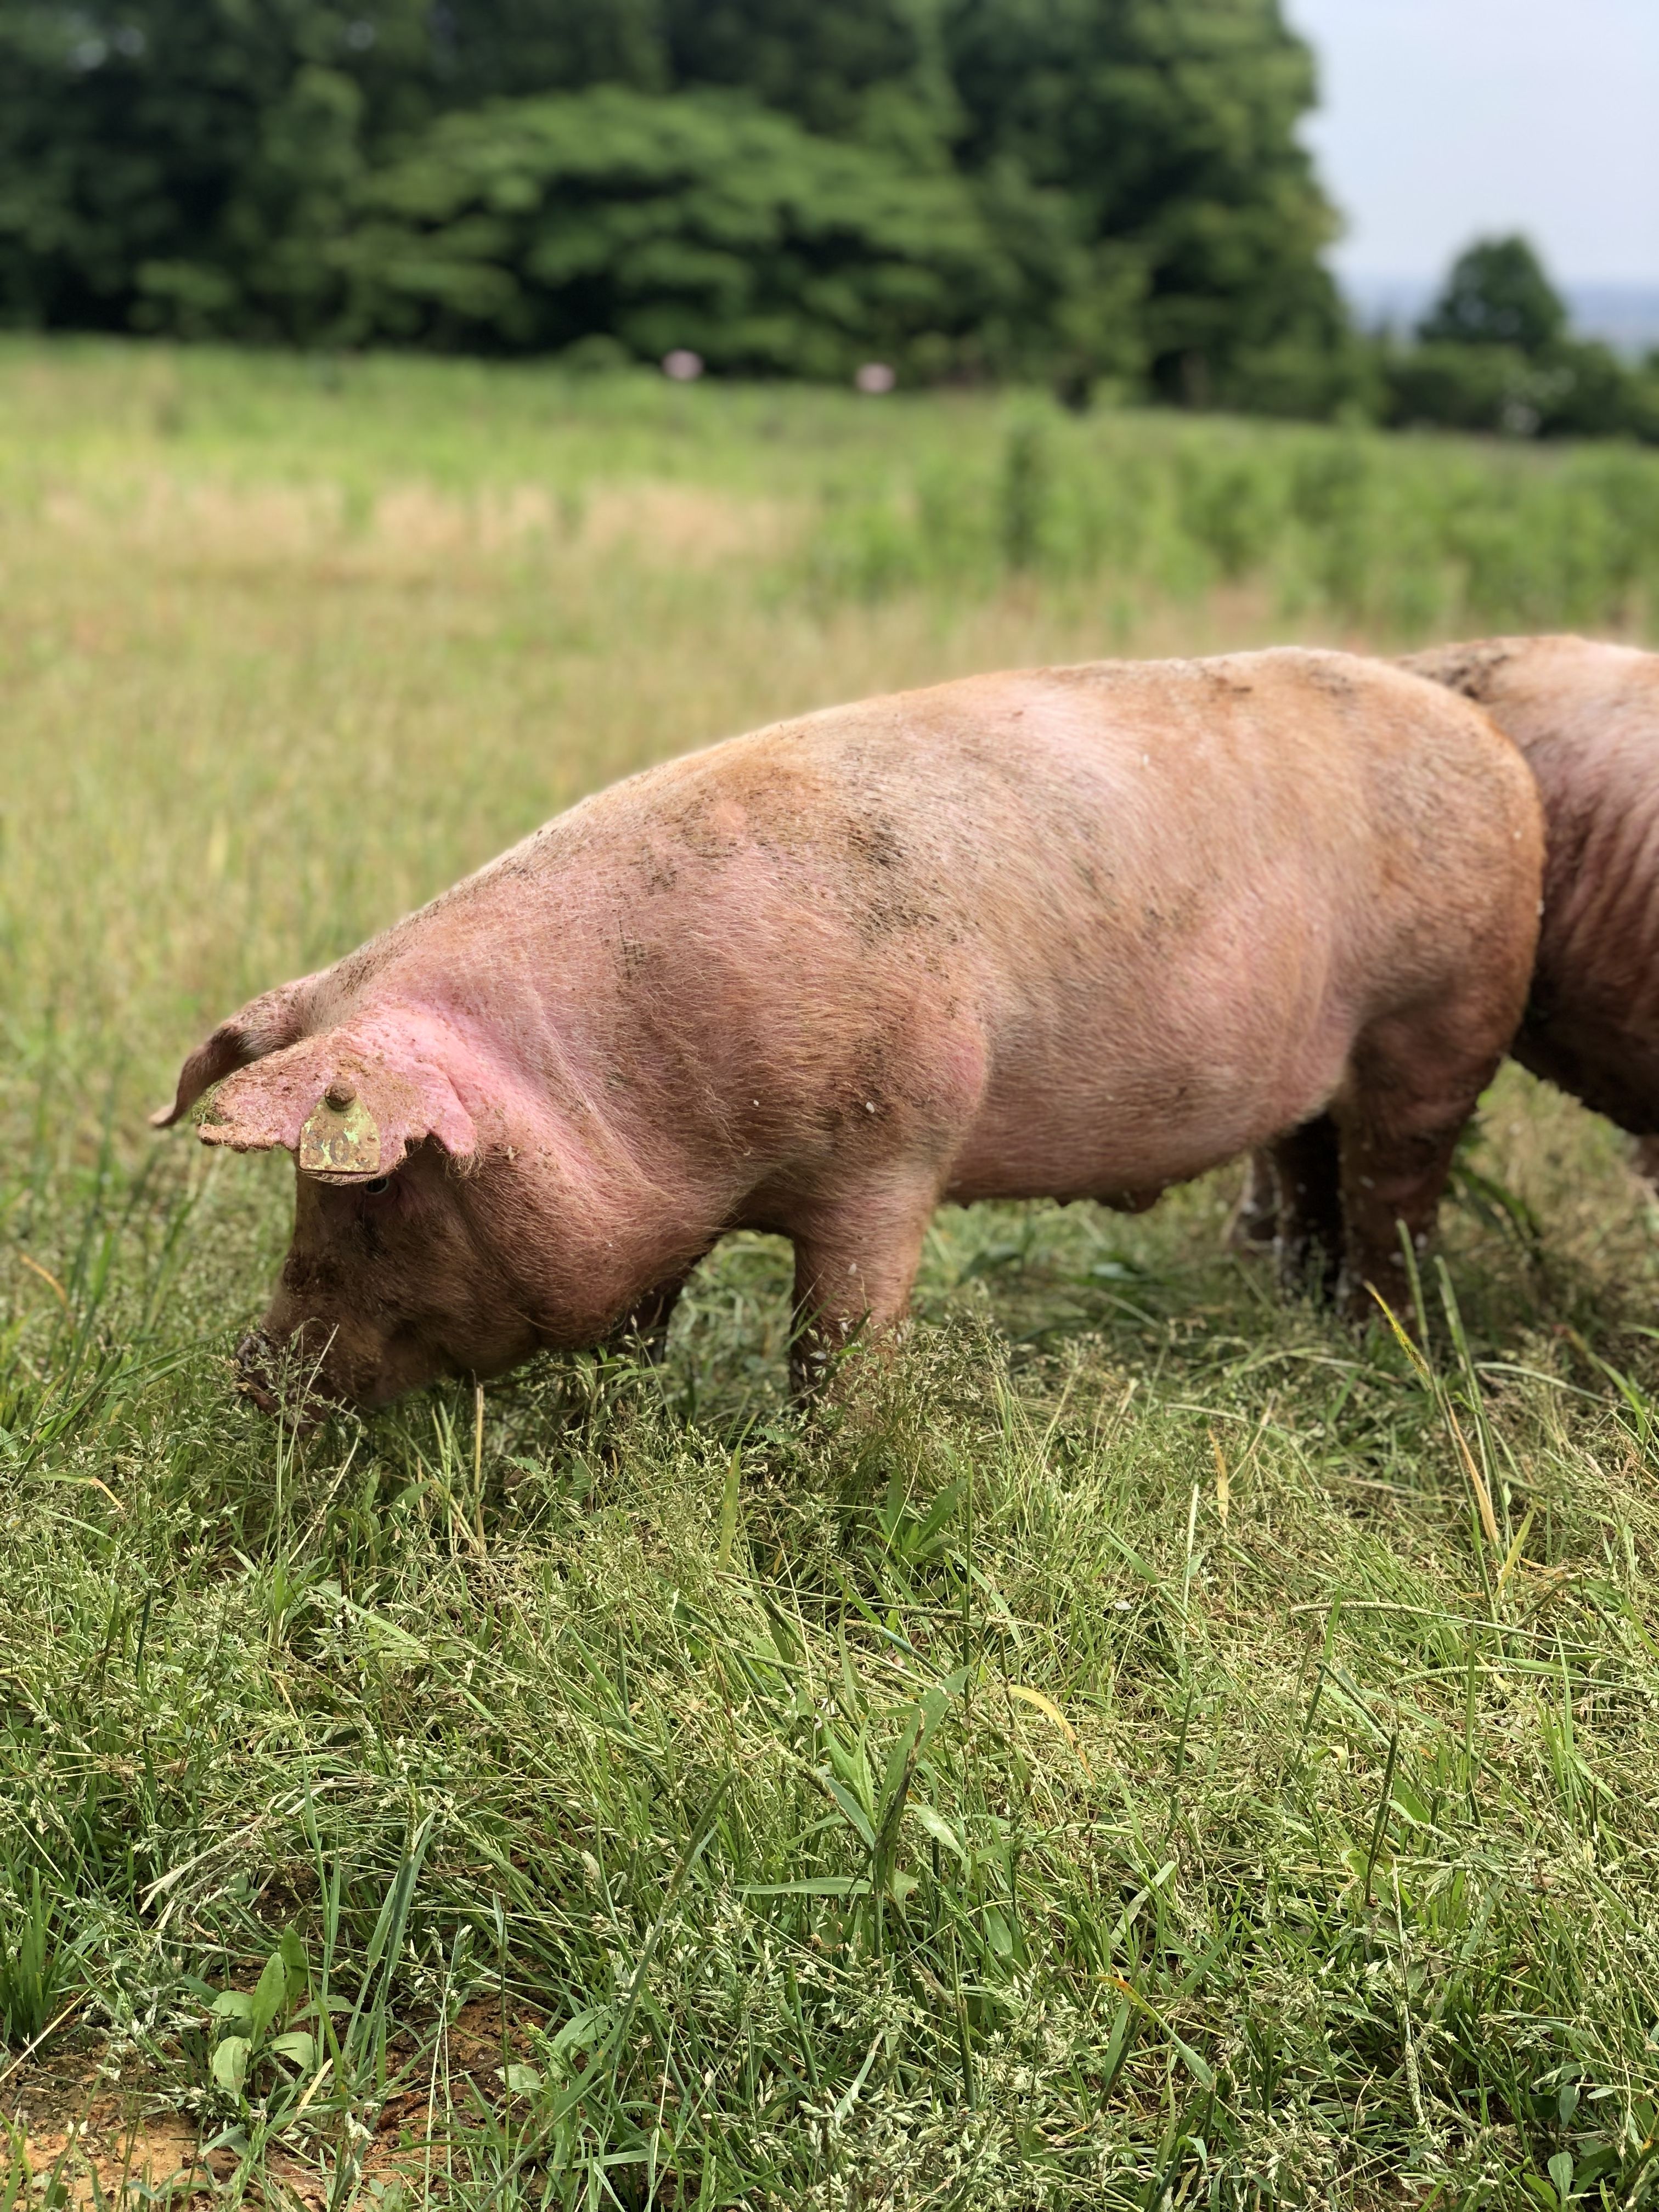 北陸初の放牧養豚を実現。6次産業化プロデューサー・川瀬 悠さんが語る、農福連携の未来と農業の魅力